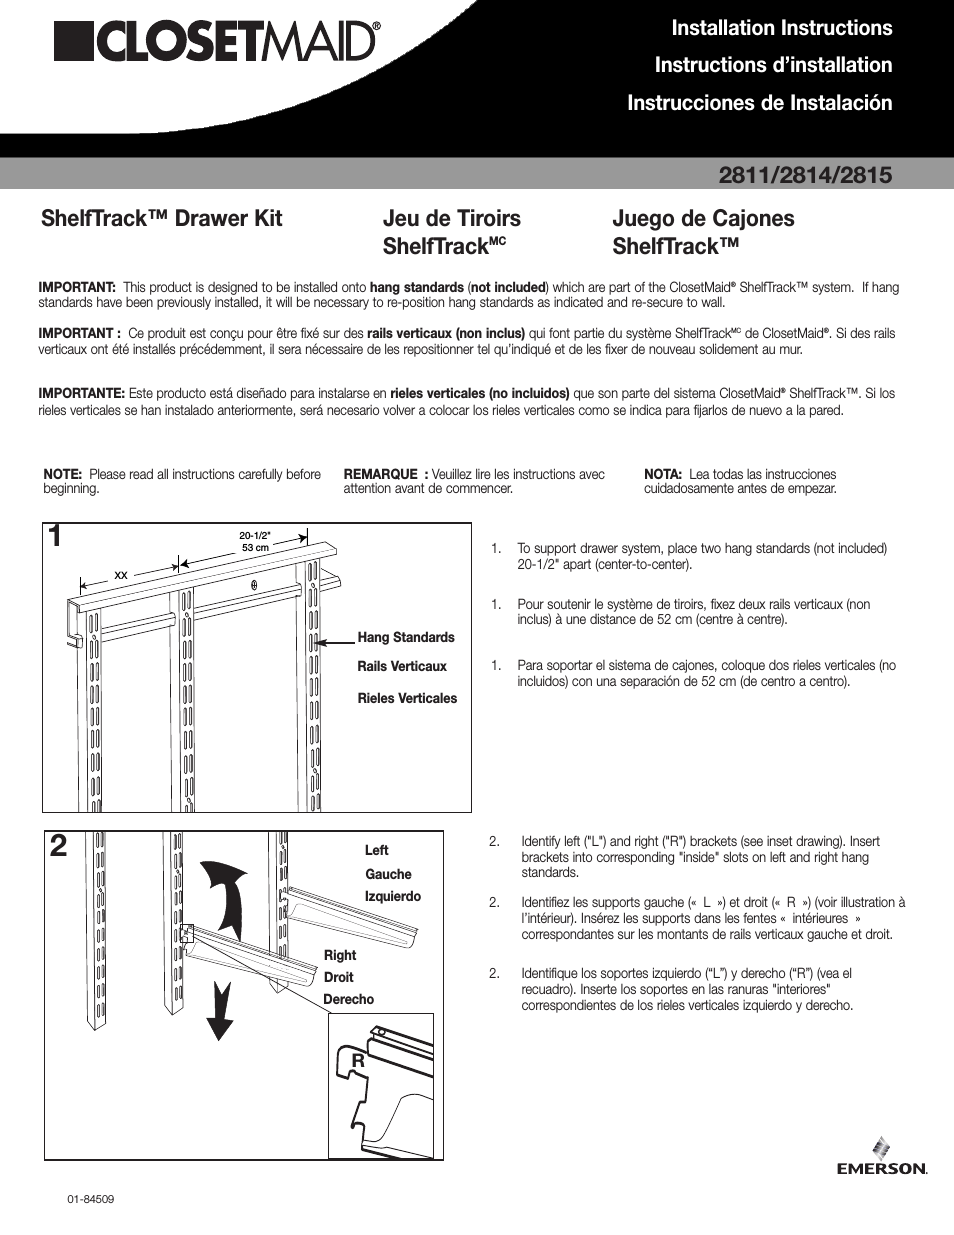 ShelfTrack Drawer Kit 2815